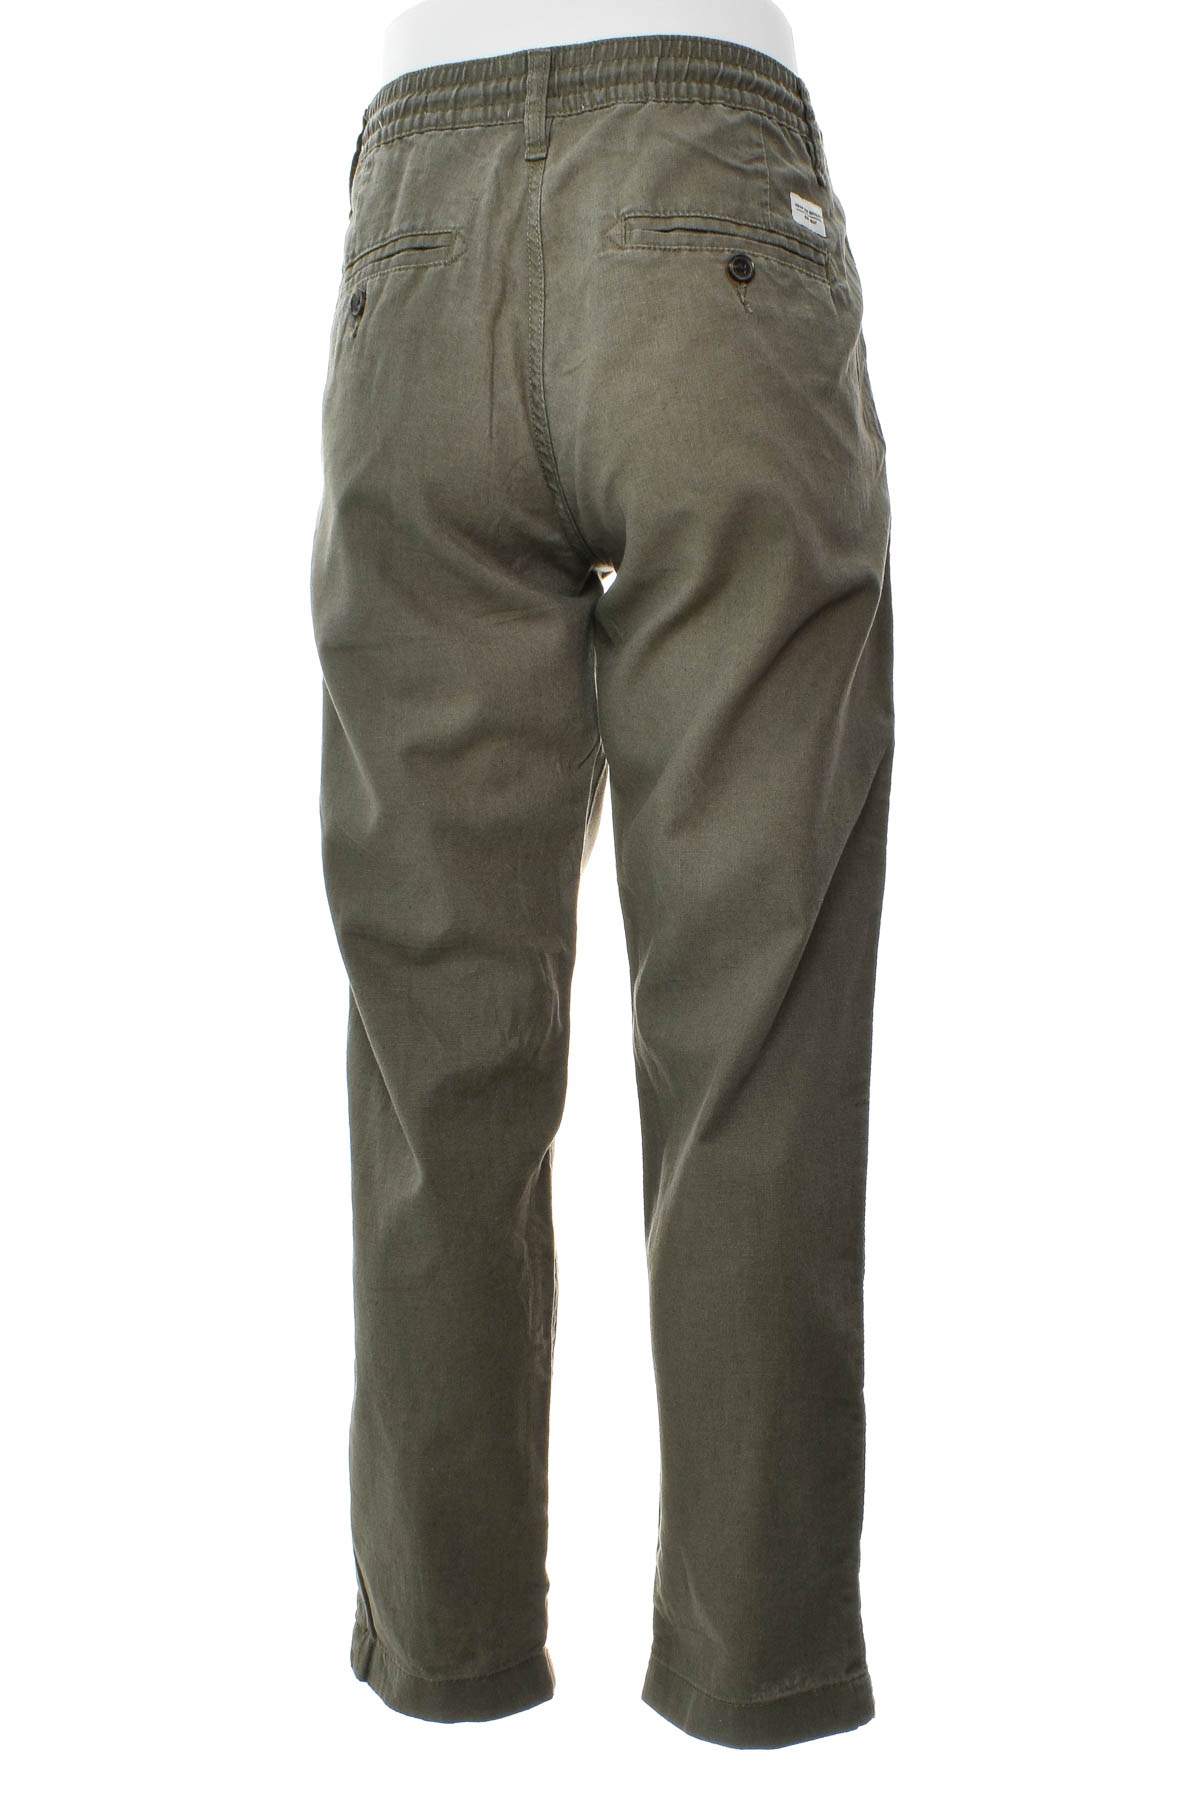 Pantalon pentru bărbați - C&A - 1